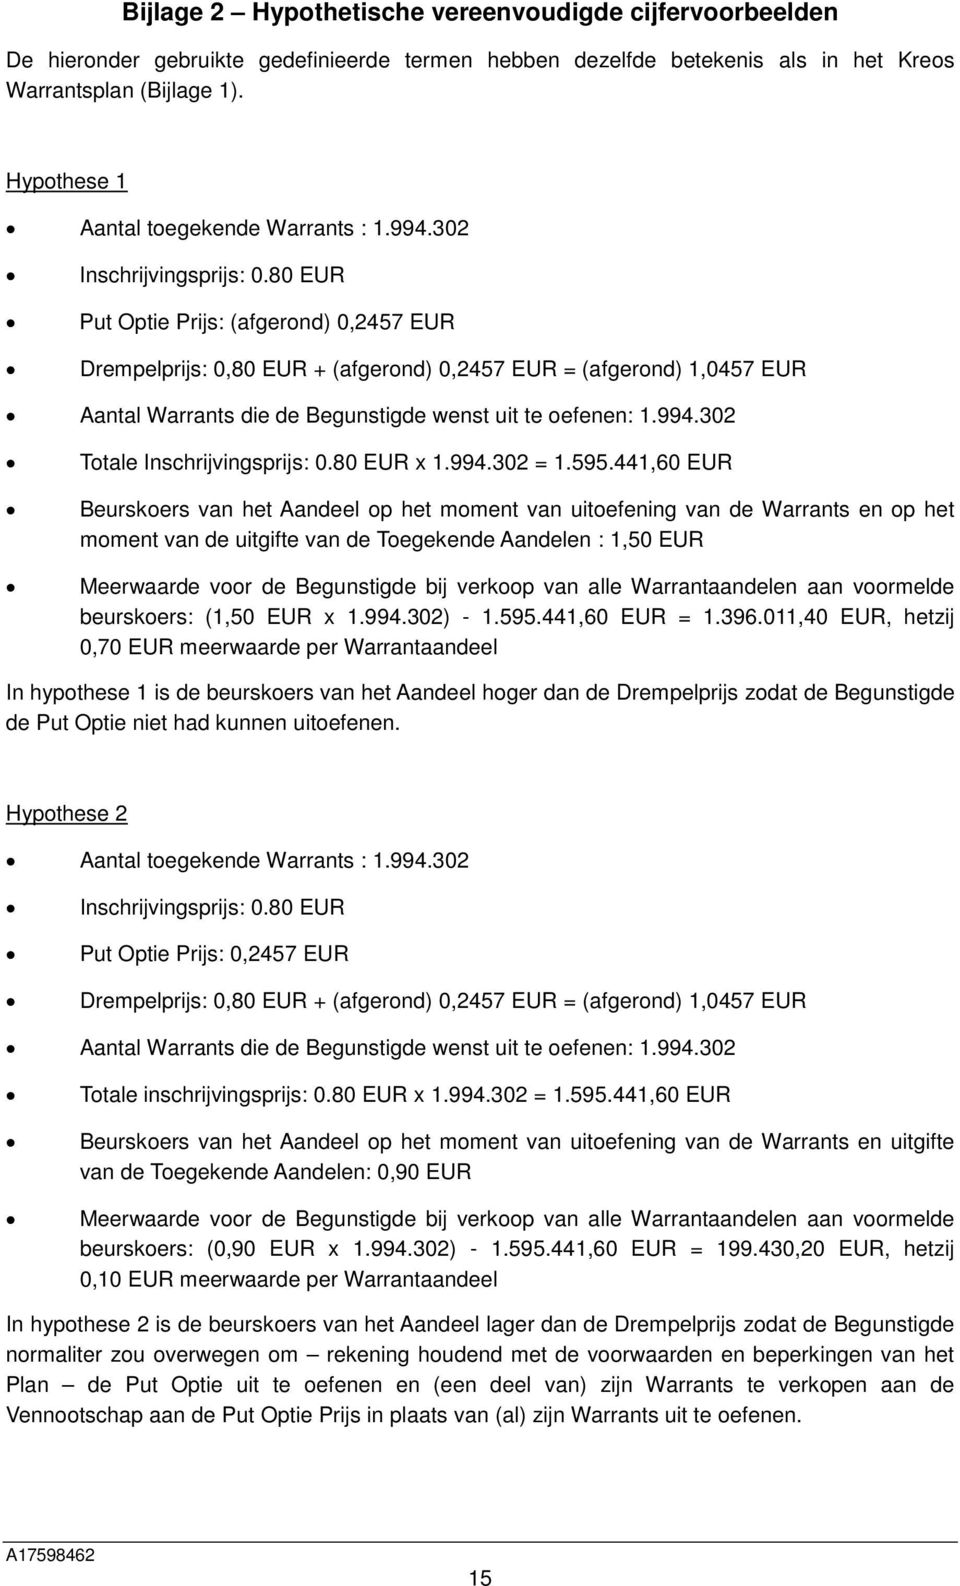 80 EUR Put Optie Prijs: (afgerond) 0,2457 EUR Drempelprijs: 0,80 EUR + (afgerond) 0,2457 EUR = (afgerond) 1,0457 EUR Aantal Warrants die de Begunstigde wenst uit te oefenen: 1.994.